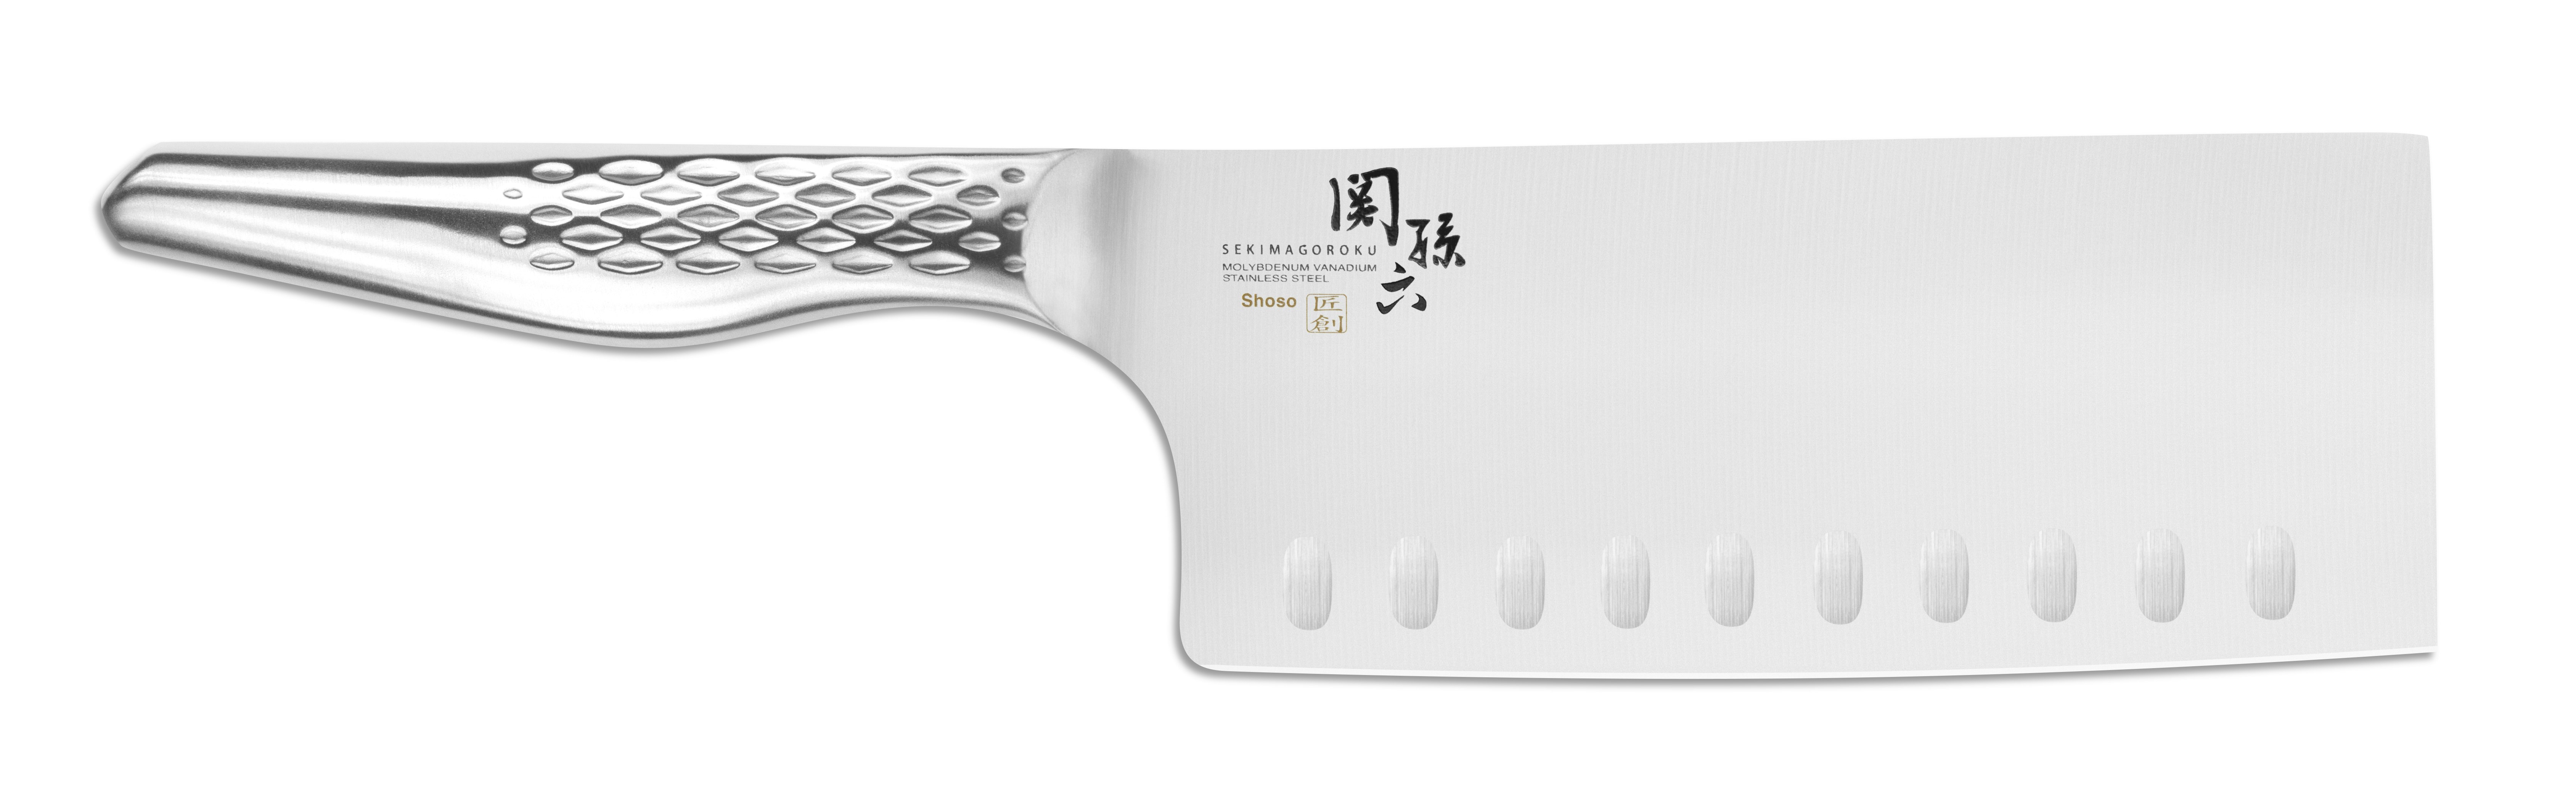 KAI Seki Magoroku Shoso China Kochmesser 6.5" (16,5 cm)